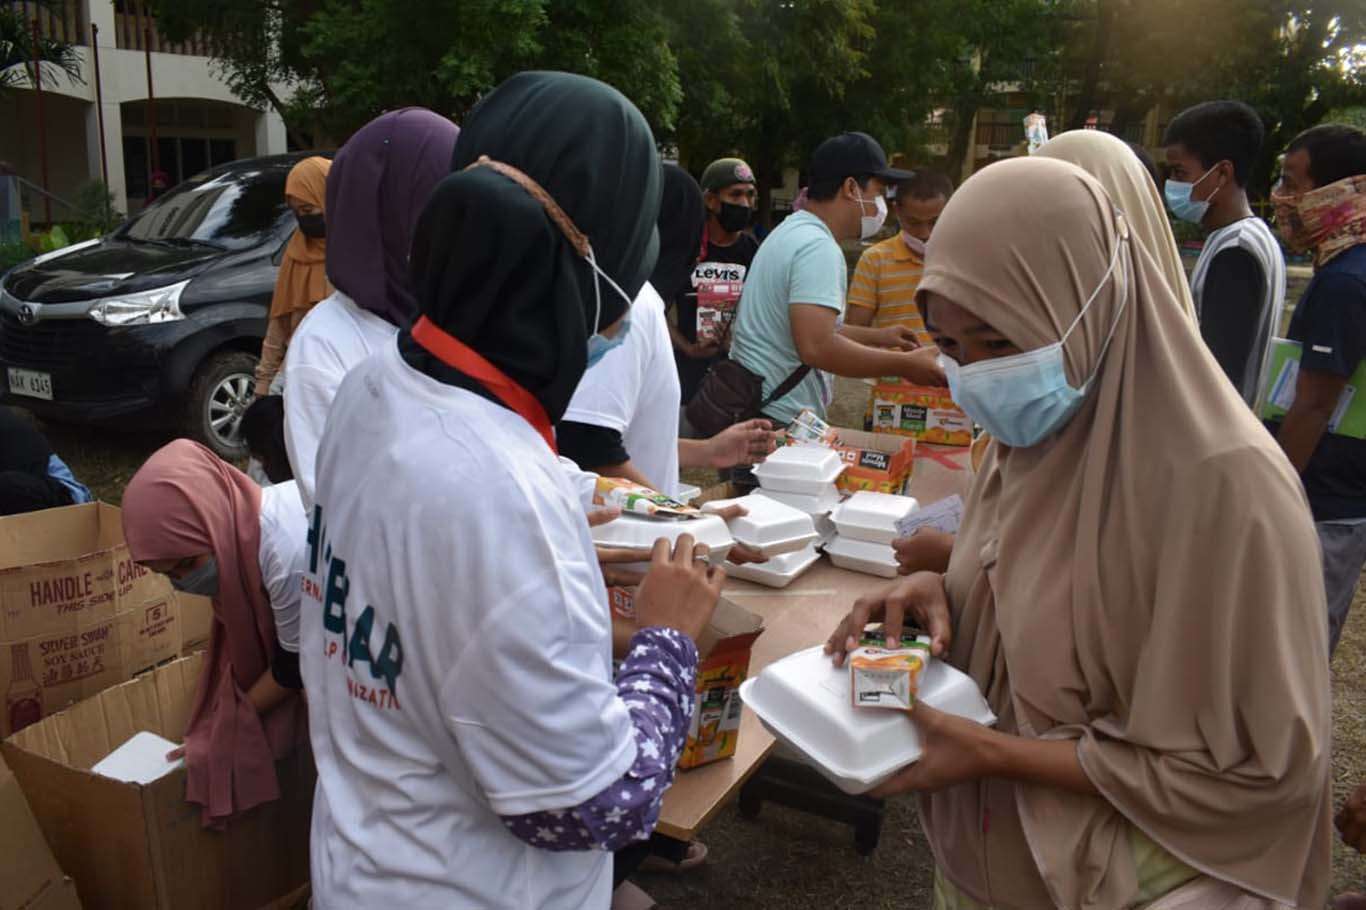 IHO EBRAR yangından etkilenen Filipinlilere yemek dağıttı